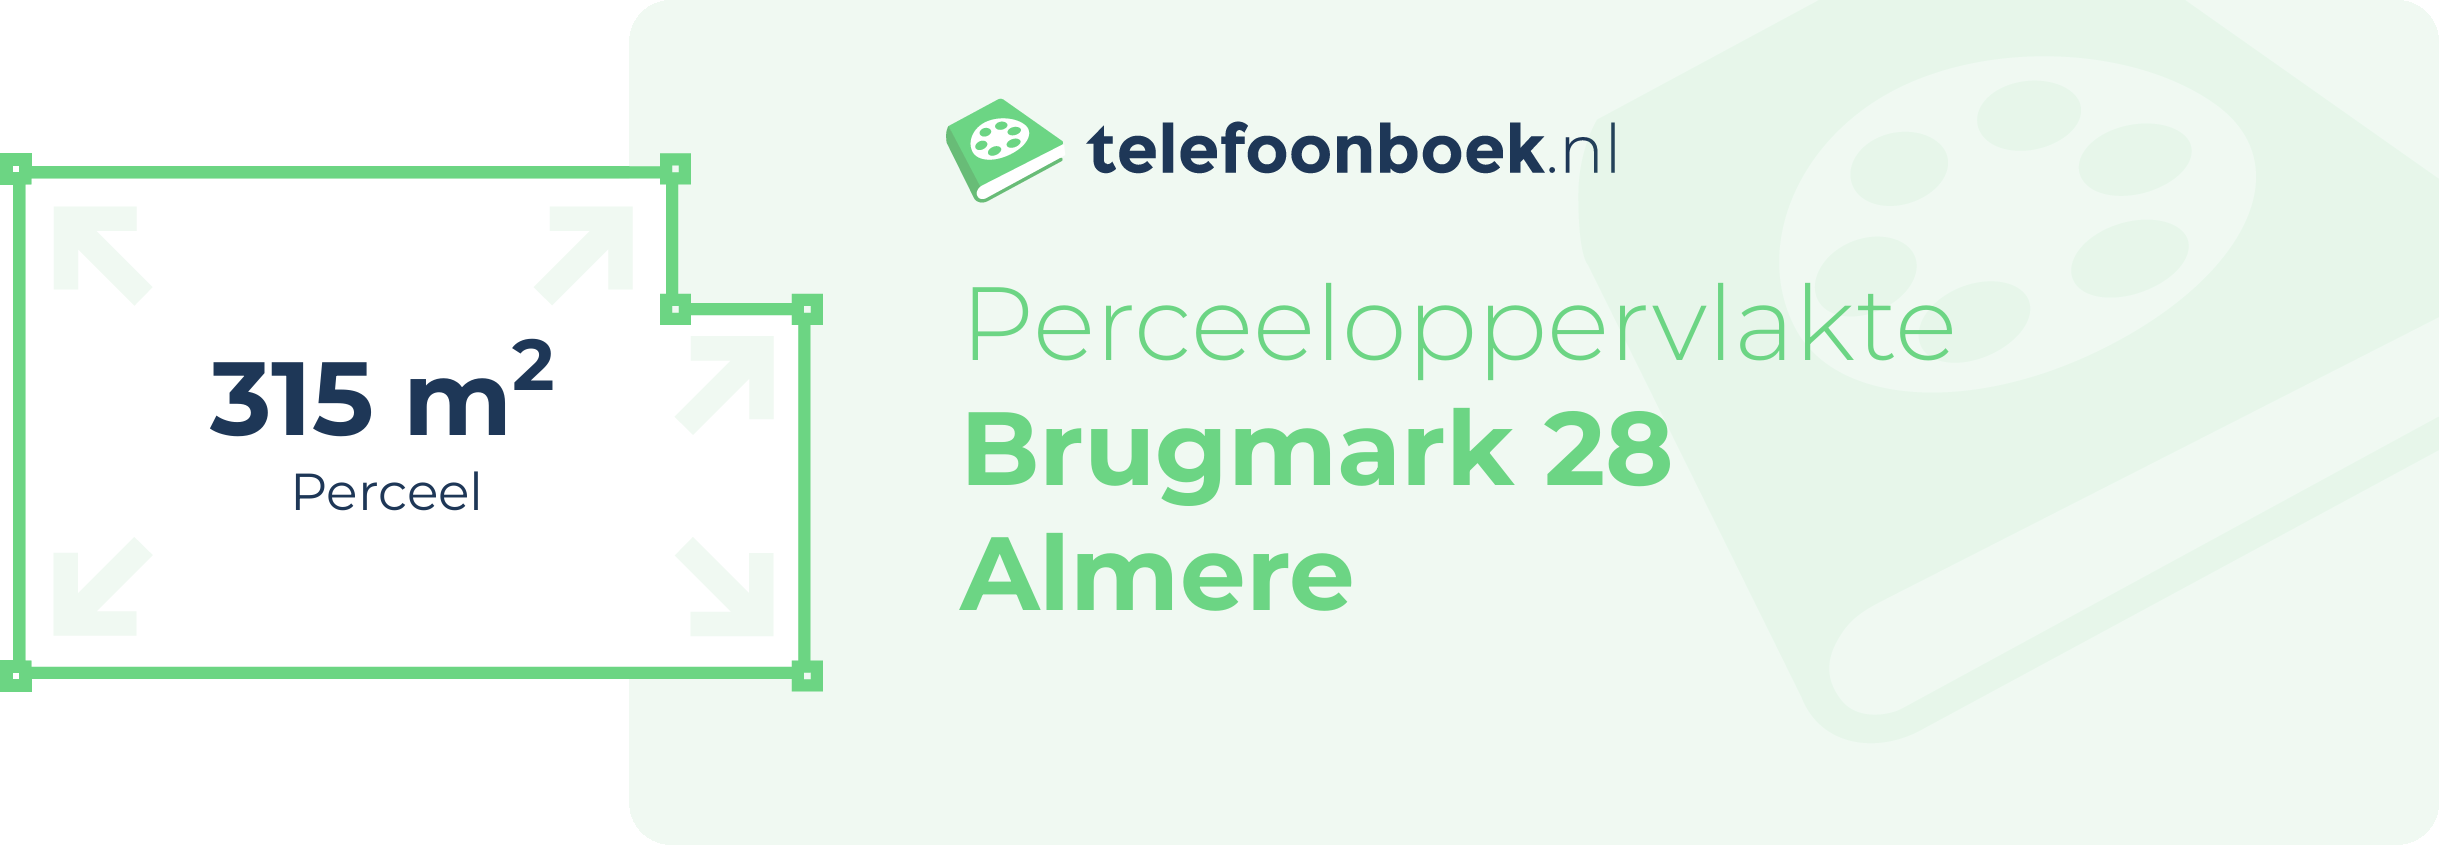 Perceeloppervlakte Brugmark 28 Almere